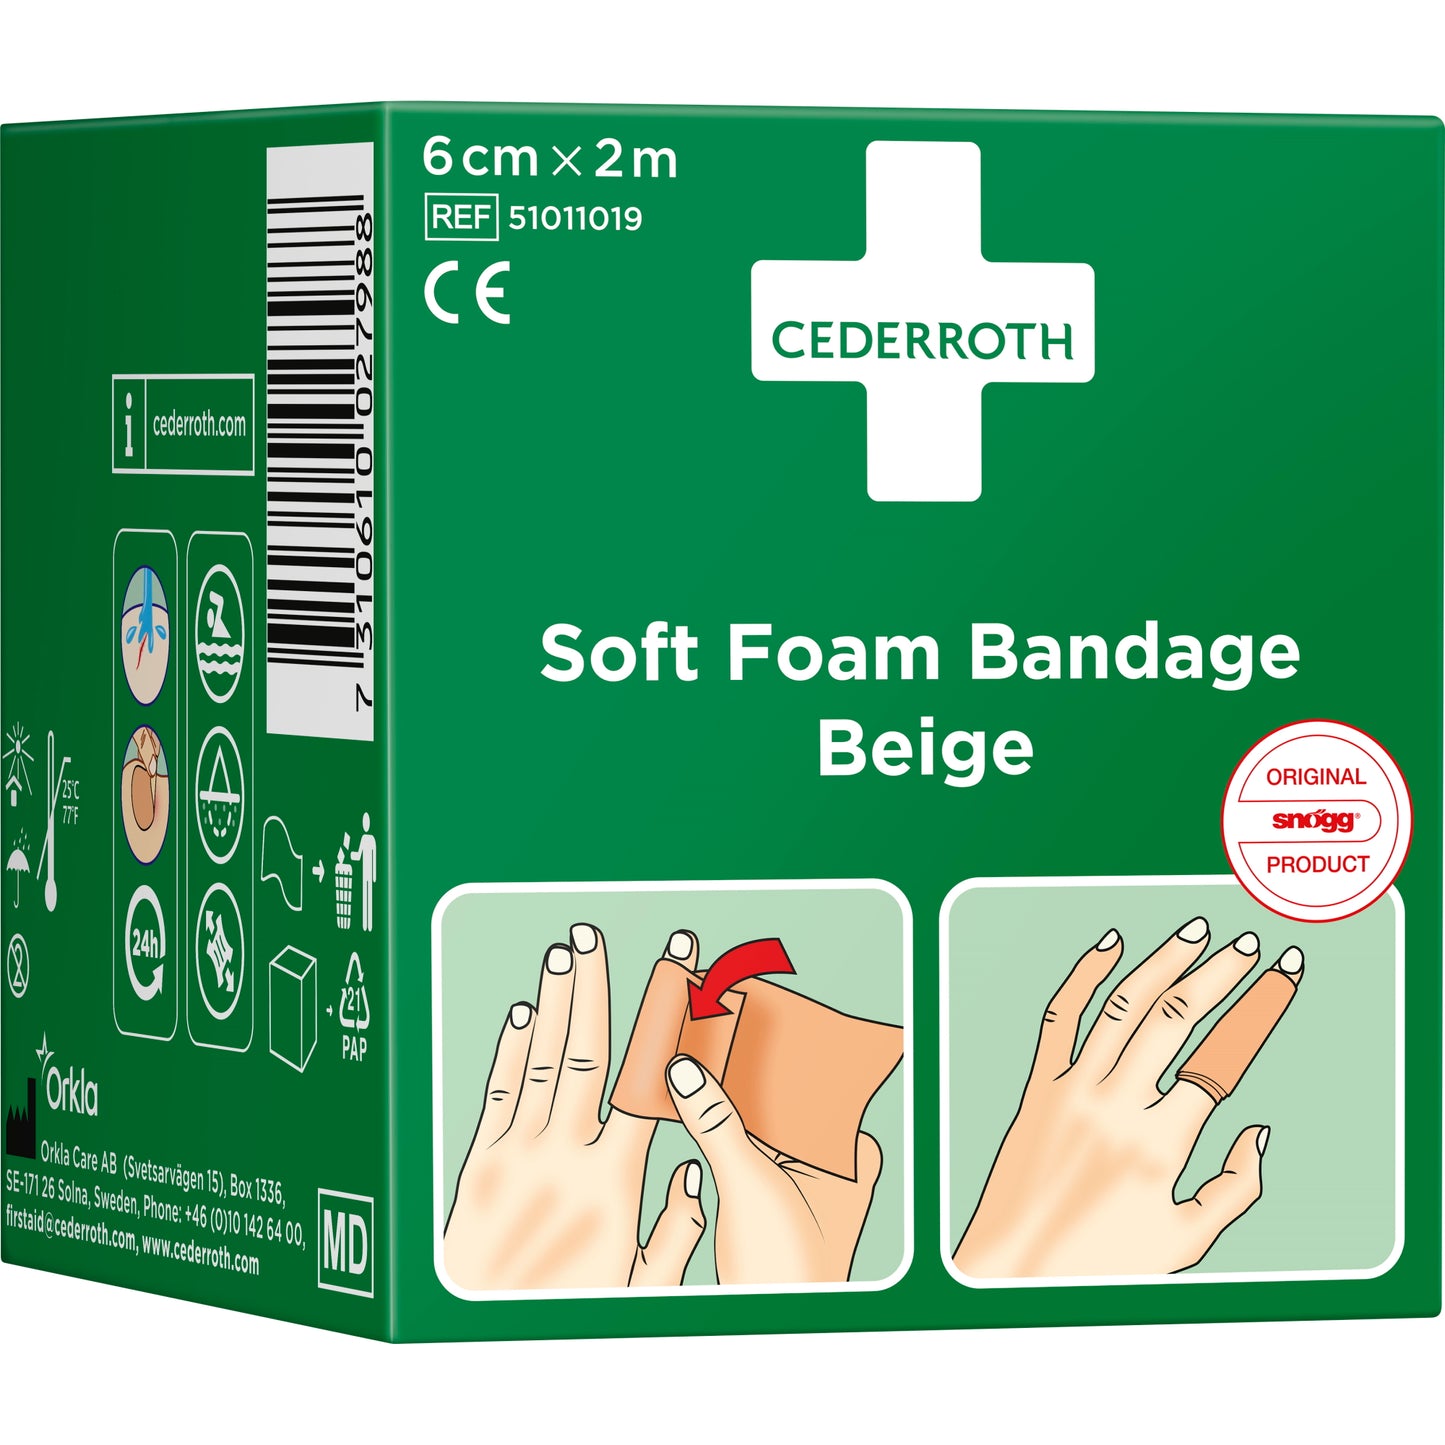 Soft Foam Bandage Beige 6 cm x 2 m